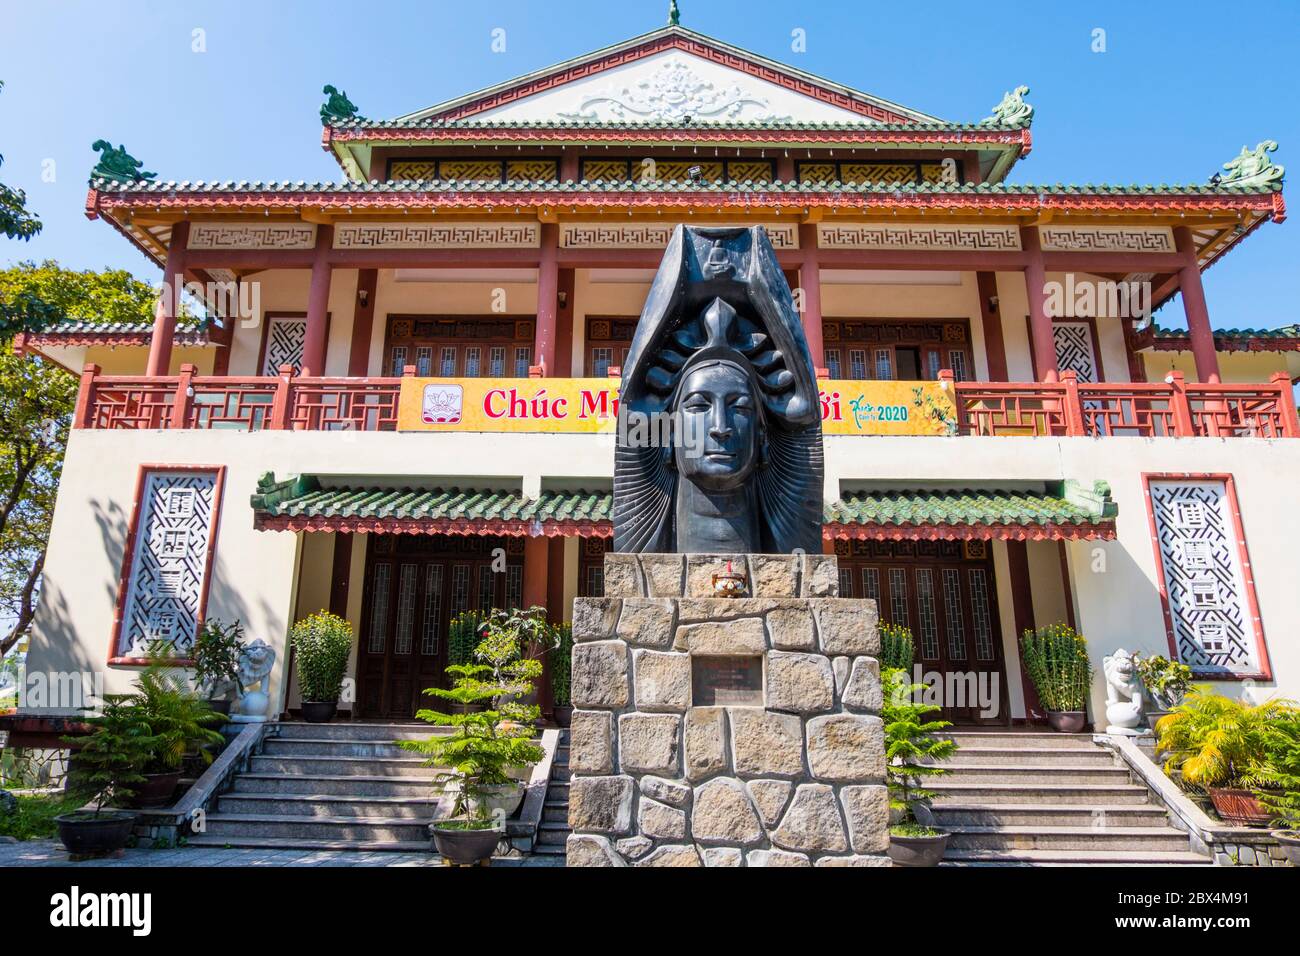 Trung Tâm Văn Hóa Phật Giáo Liễu Quán, Buddhist Culture Center, Hue, Vietnam Stock Photo